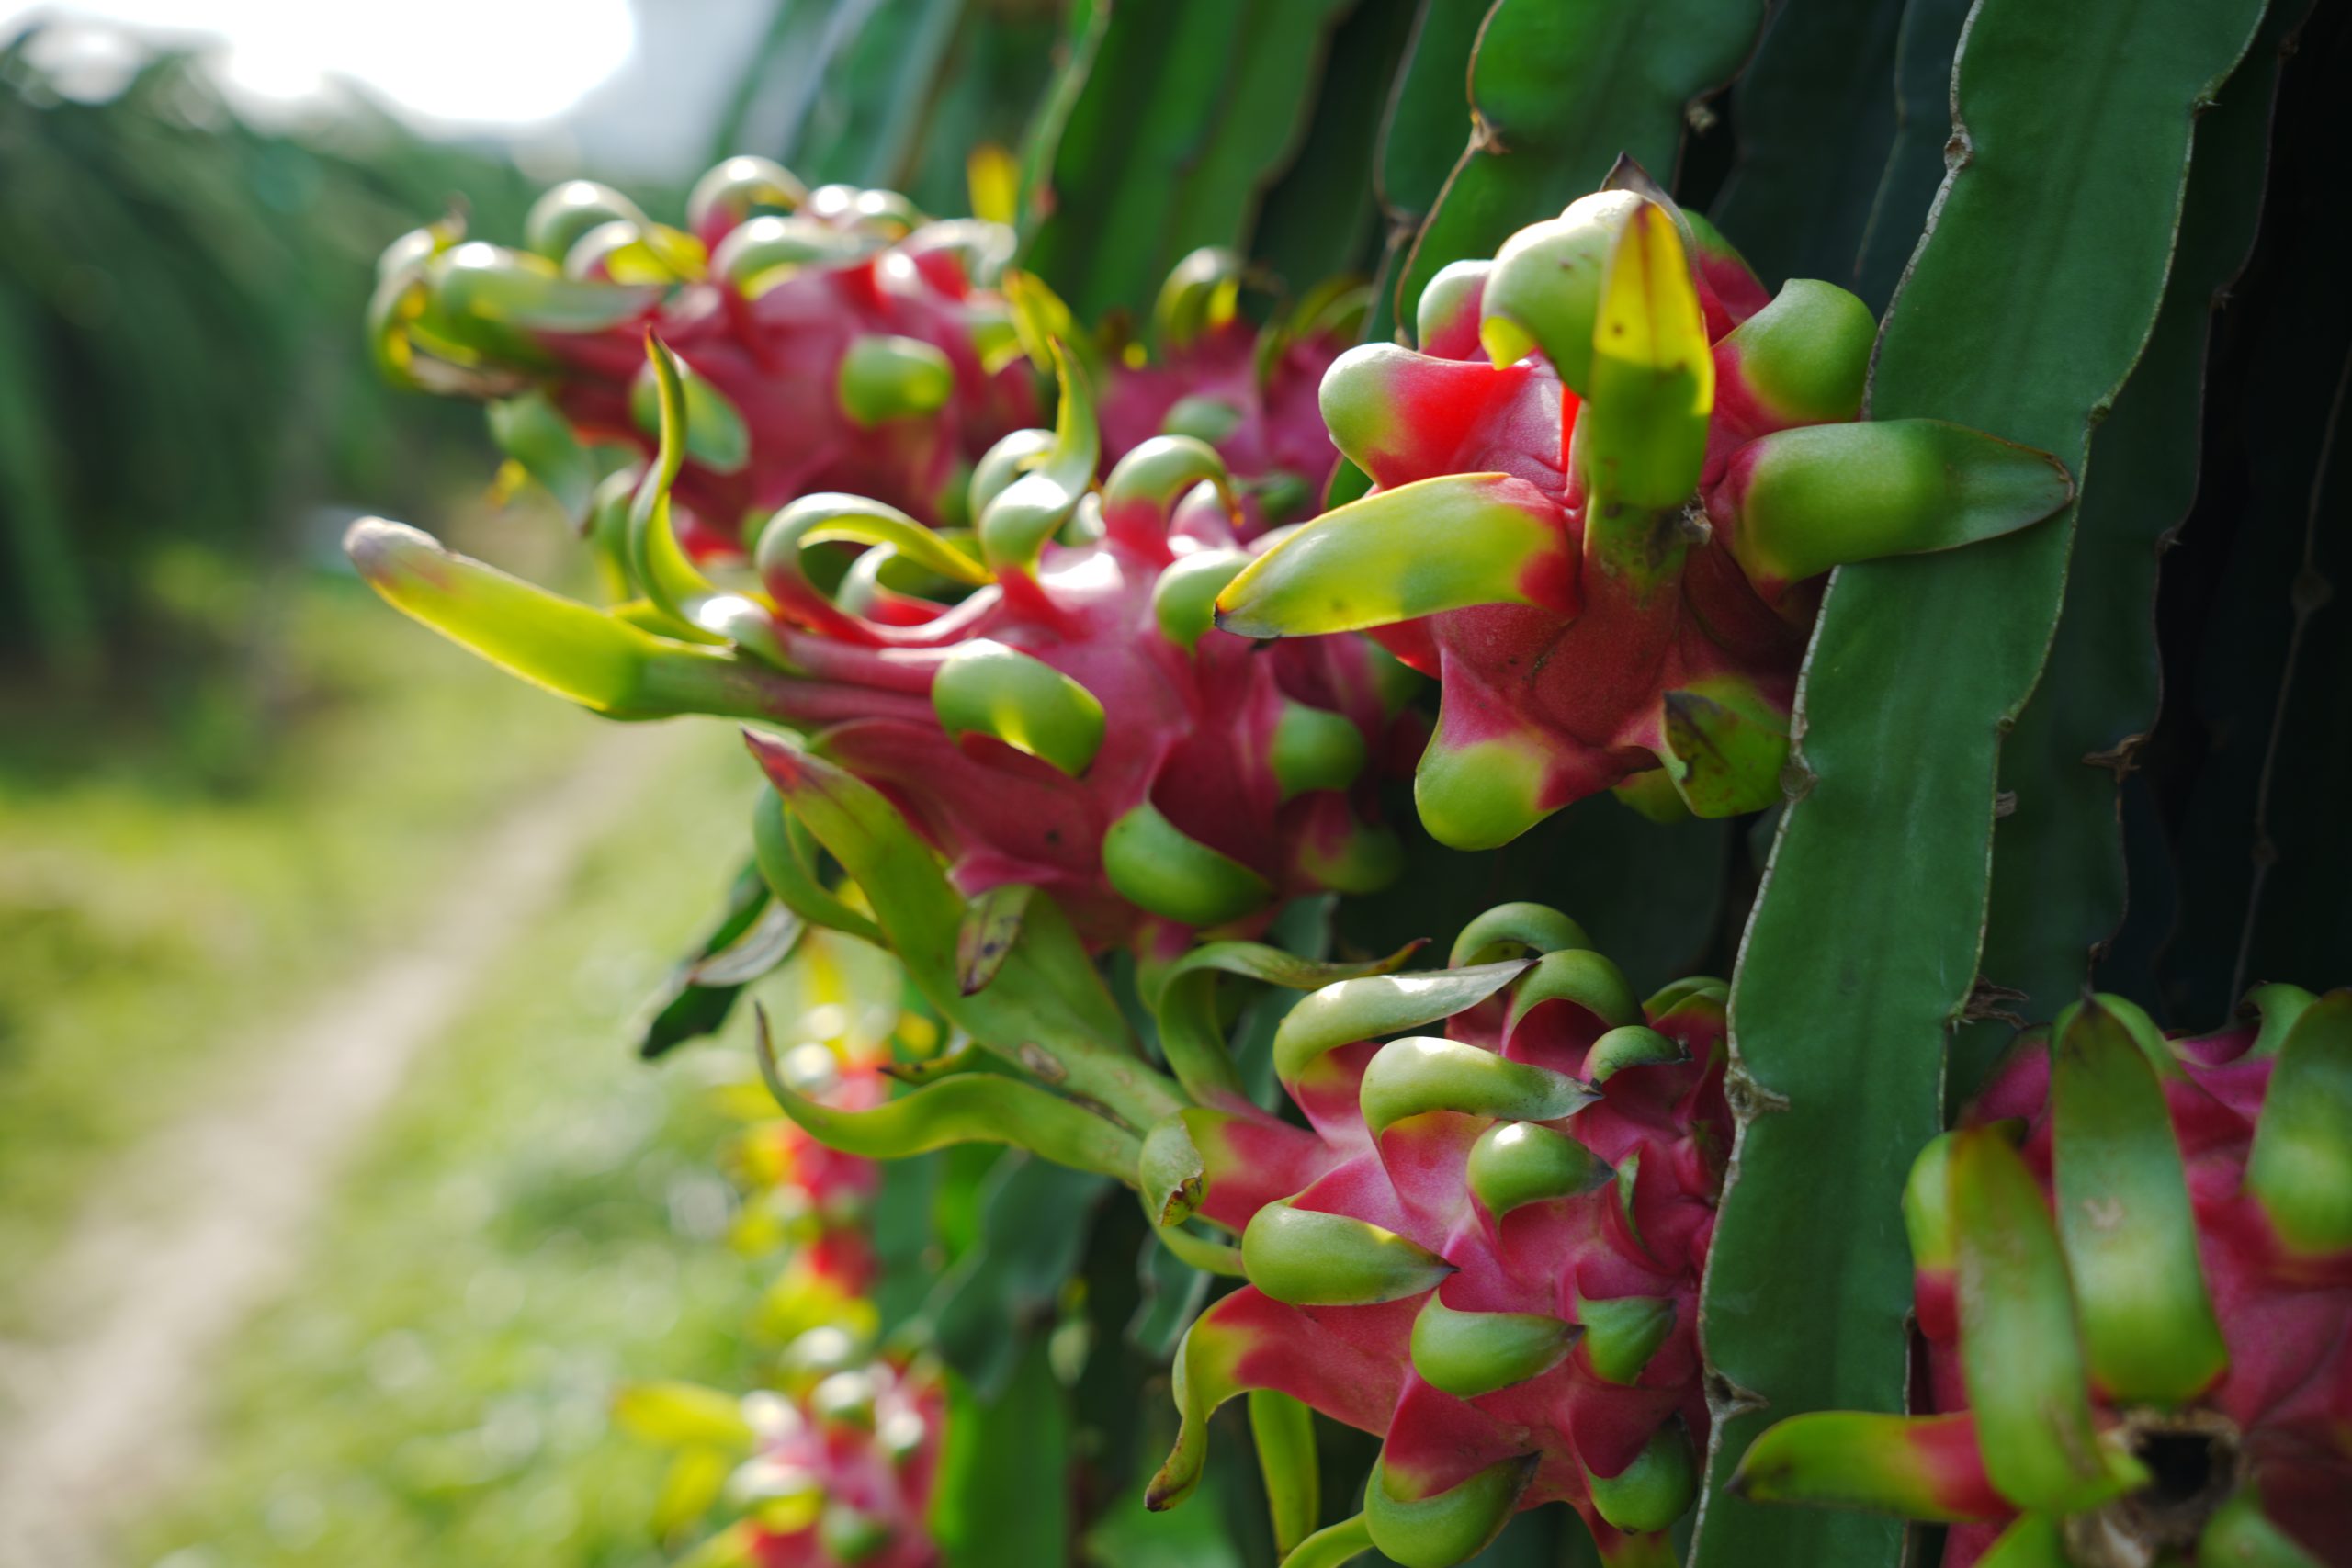 Thanh long loại trái cây bổ dưỡng cho vùng nhiệt đới